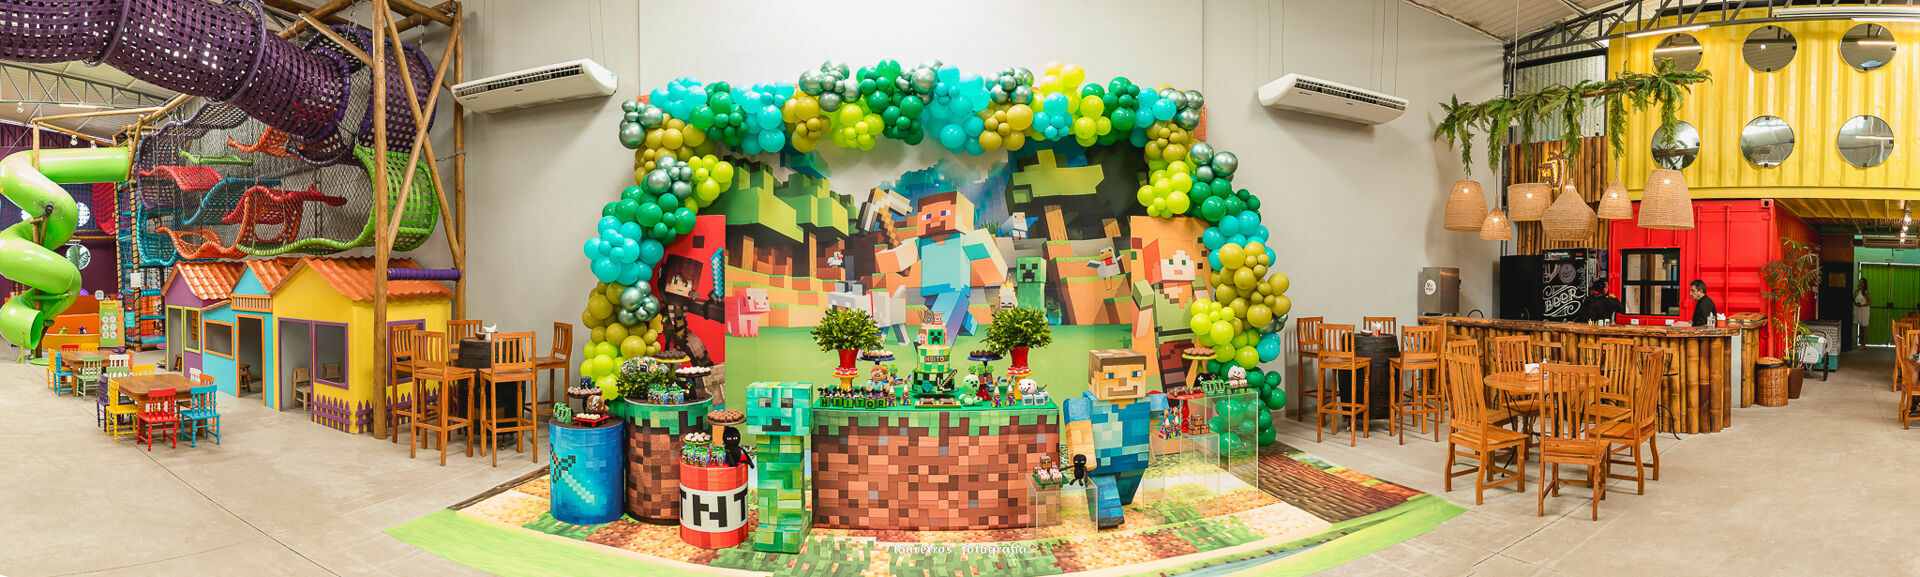 Fotografia Lúdica - Ensaio Roblox e Minecraft da Tiemi - Meu estúdio - SP